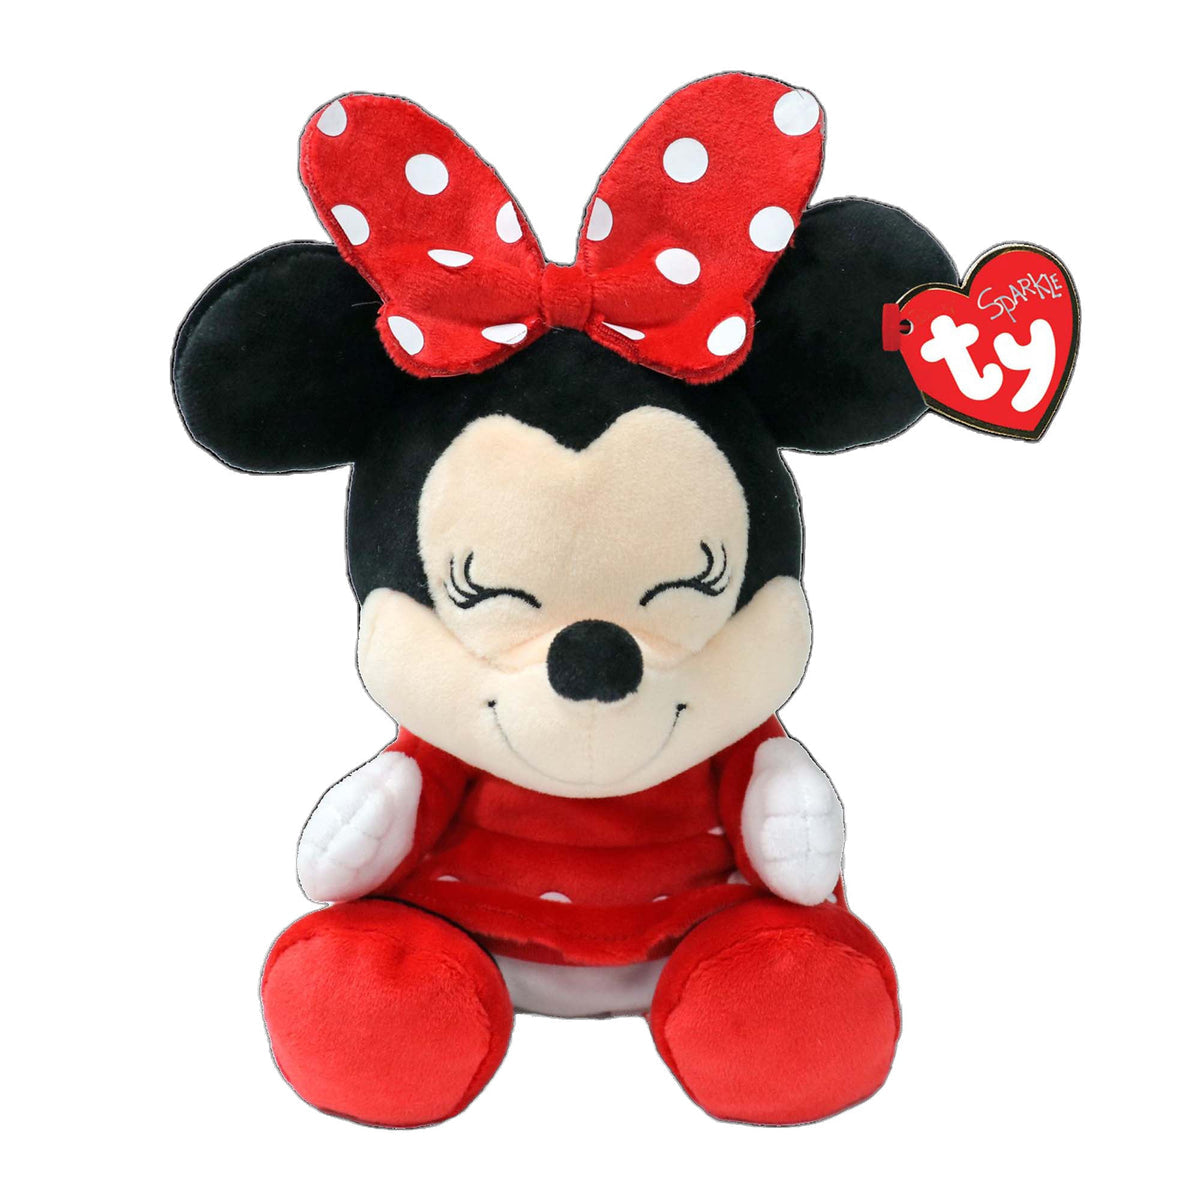 TY Disney Minnie Mouse